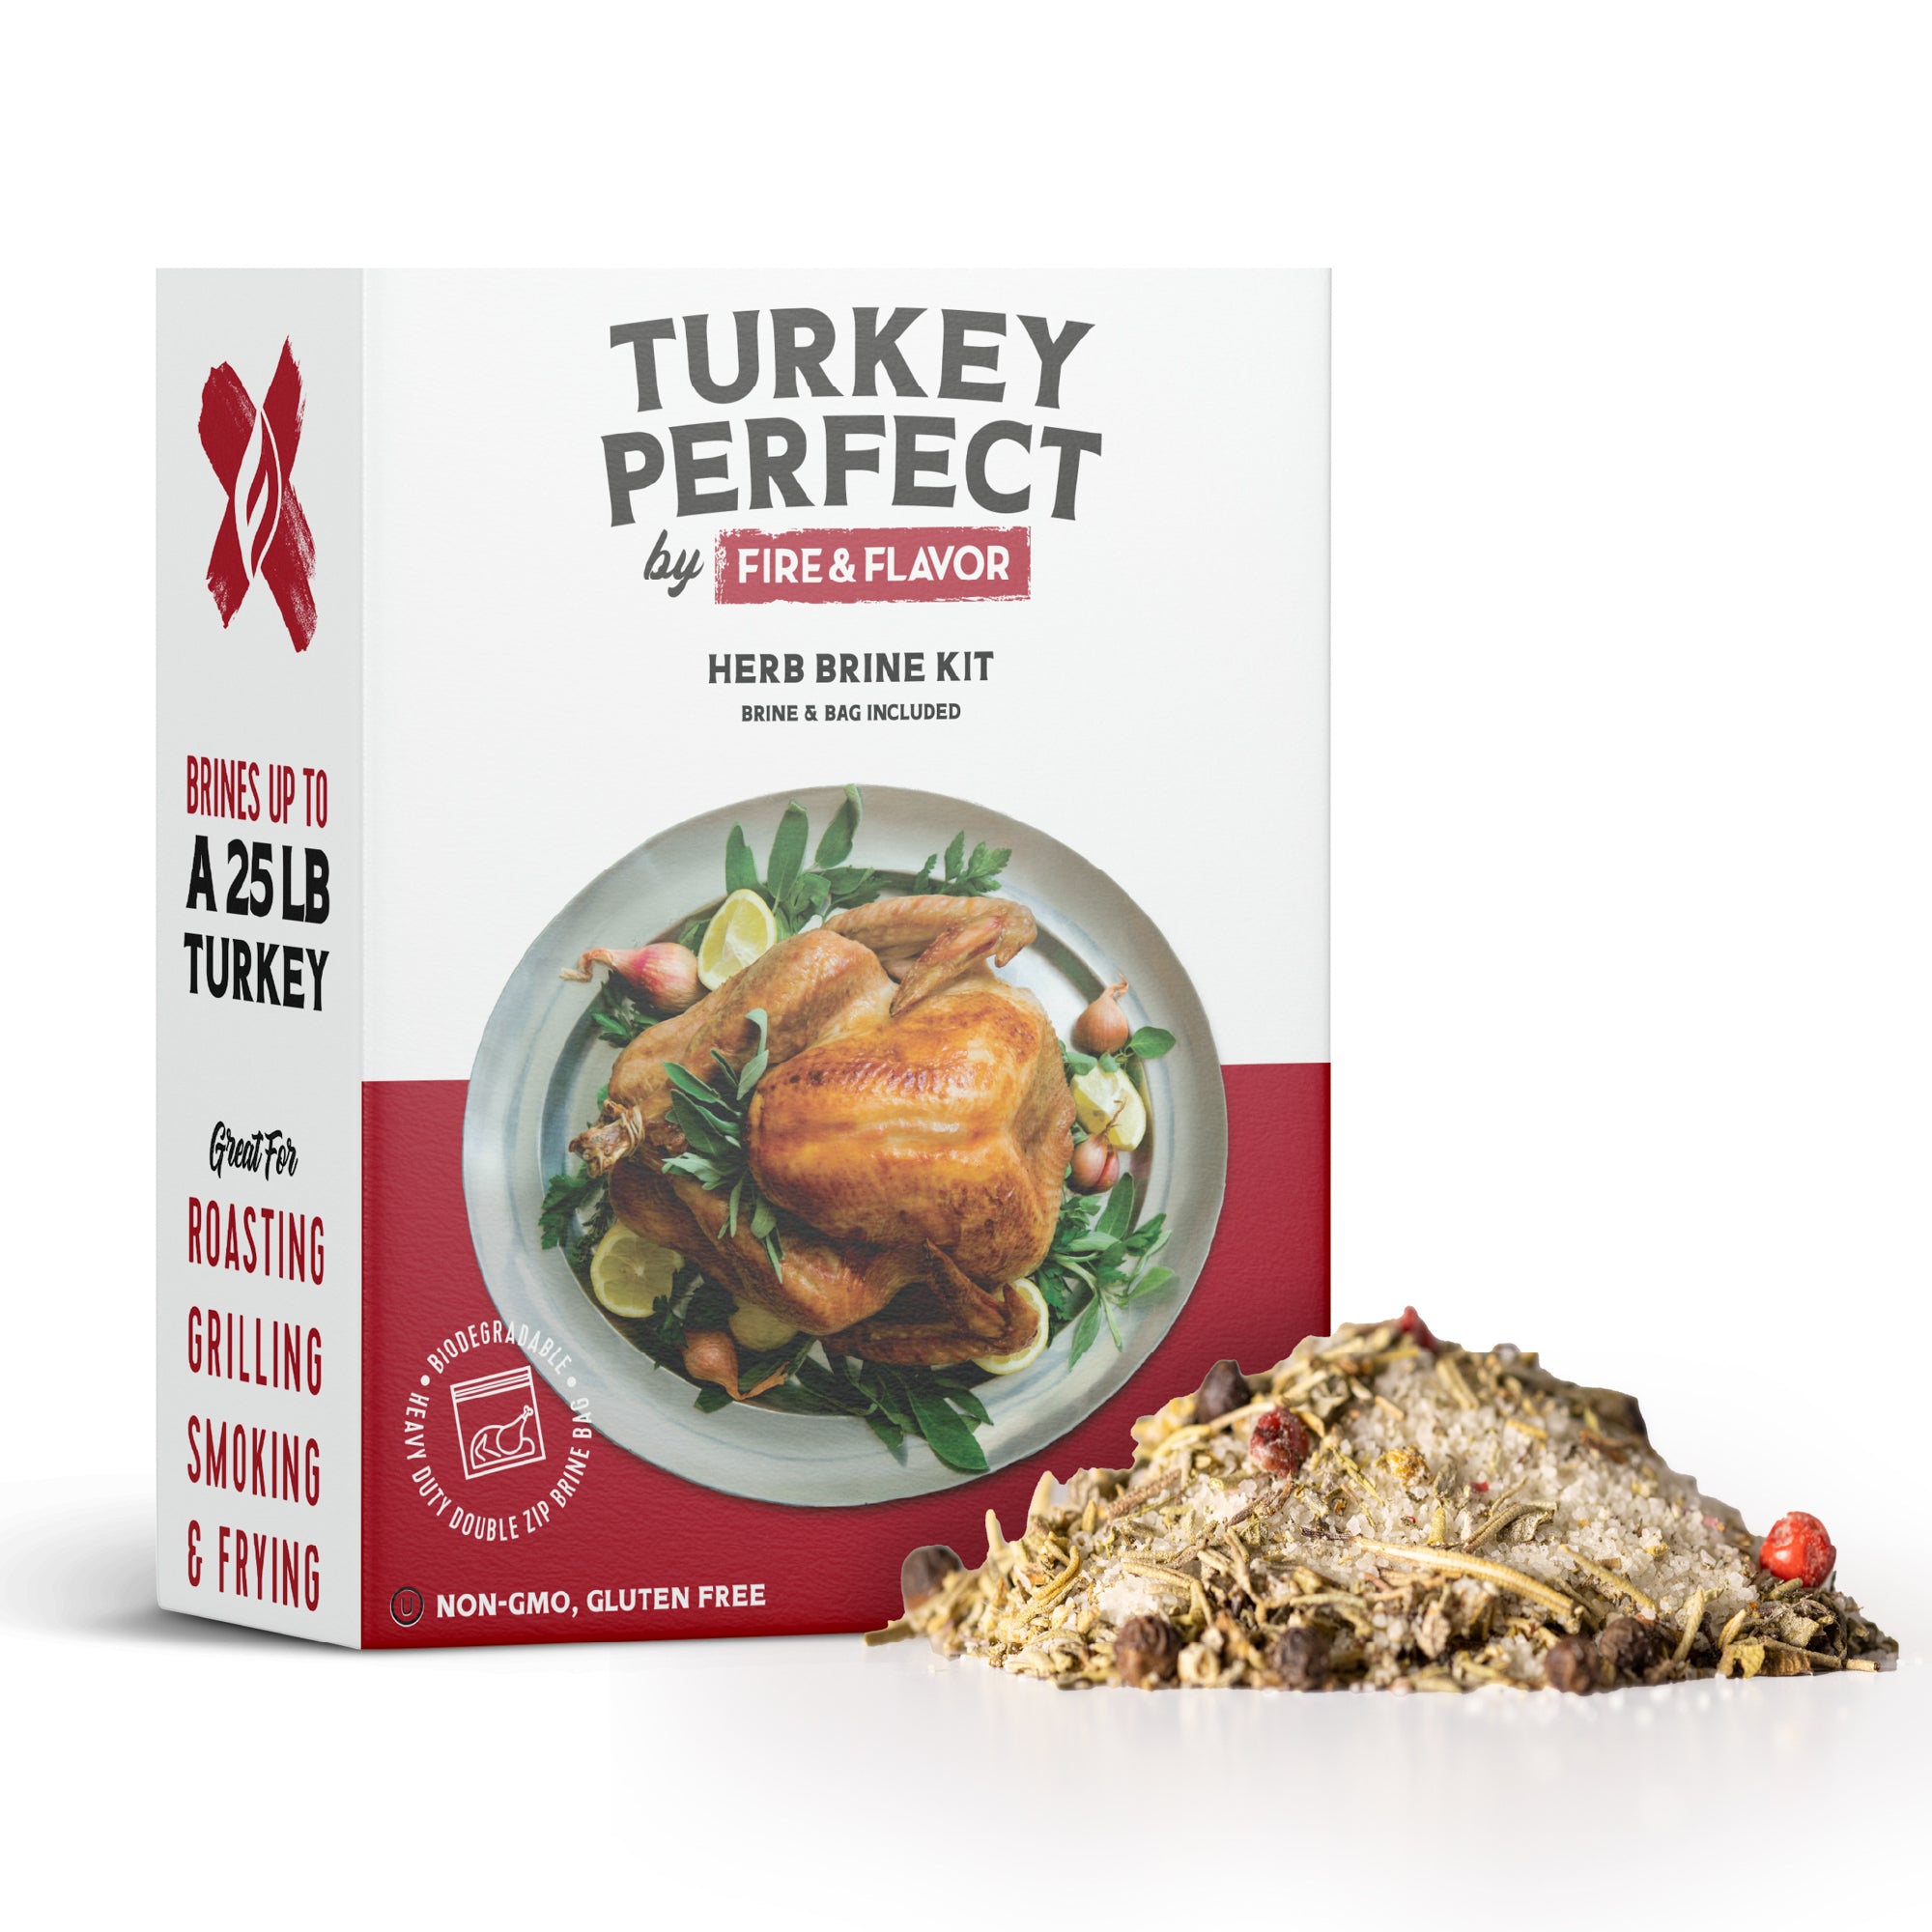 Organic Turkey Brine Kit - 16 oz. Garlic & Herb with Brine Bag by